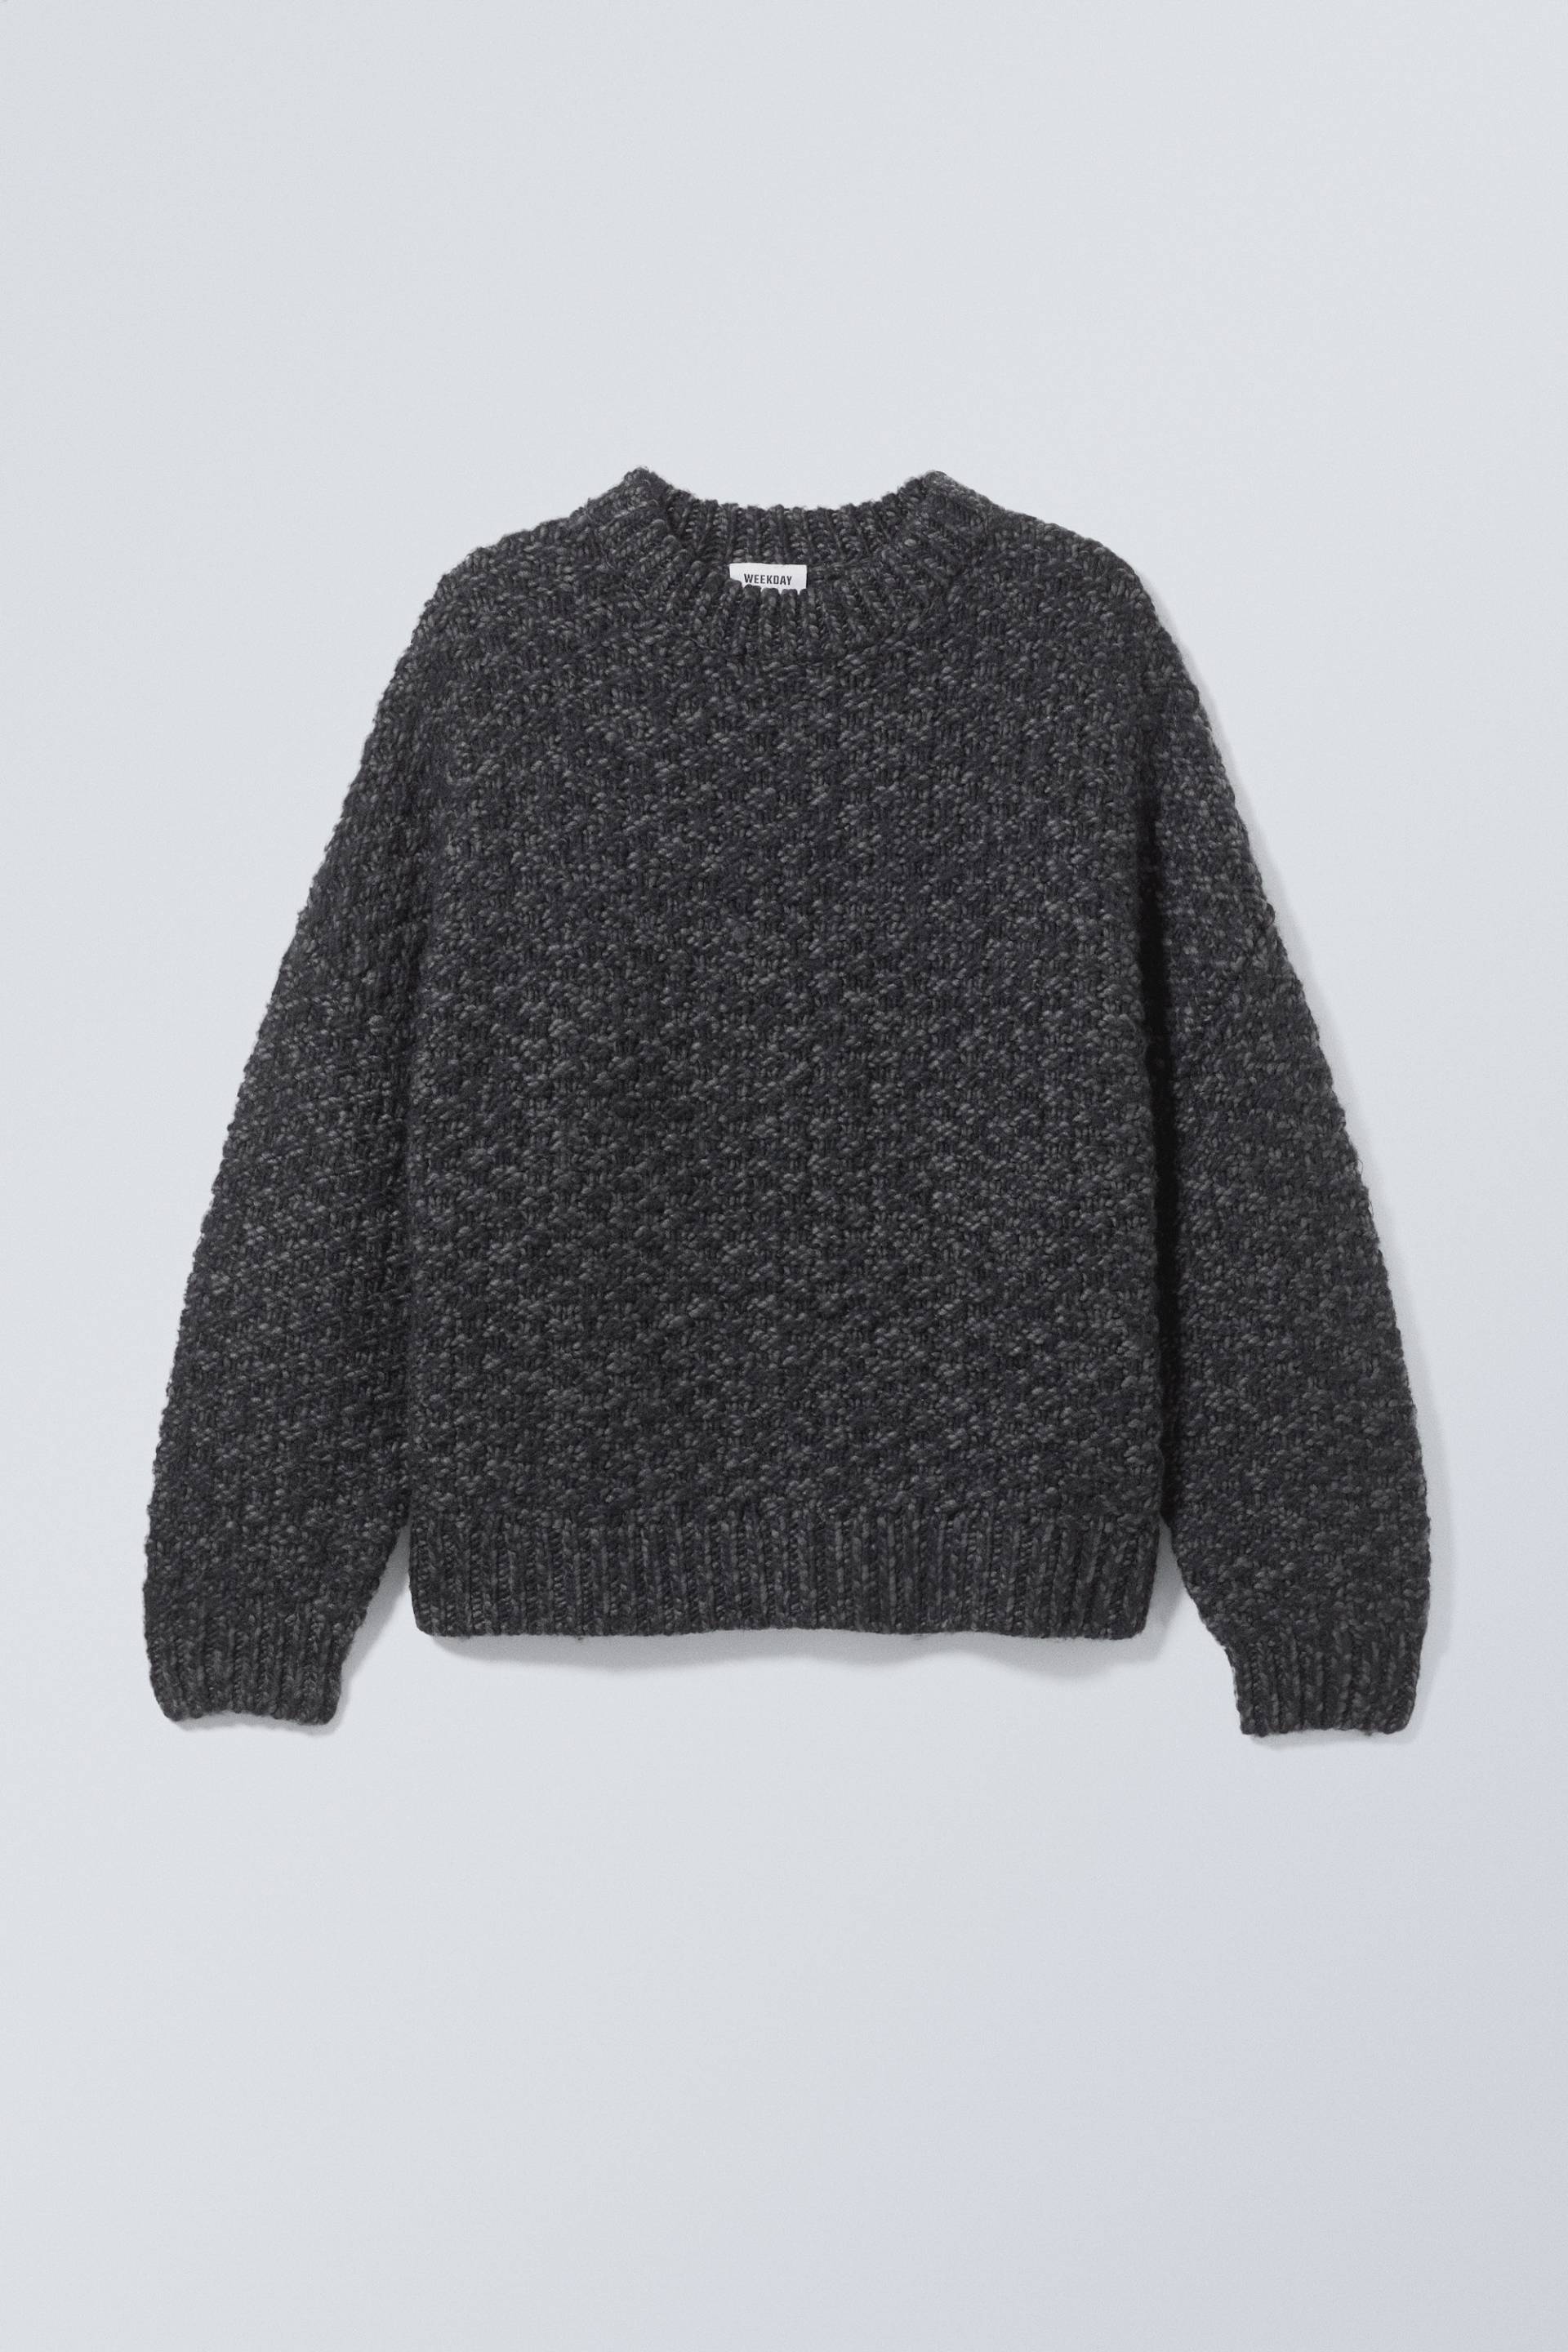 Weekday Oversized-Pullover aus Wollmischung Schwarz in Größe L. Farbe: Black von Weekday